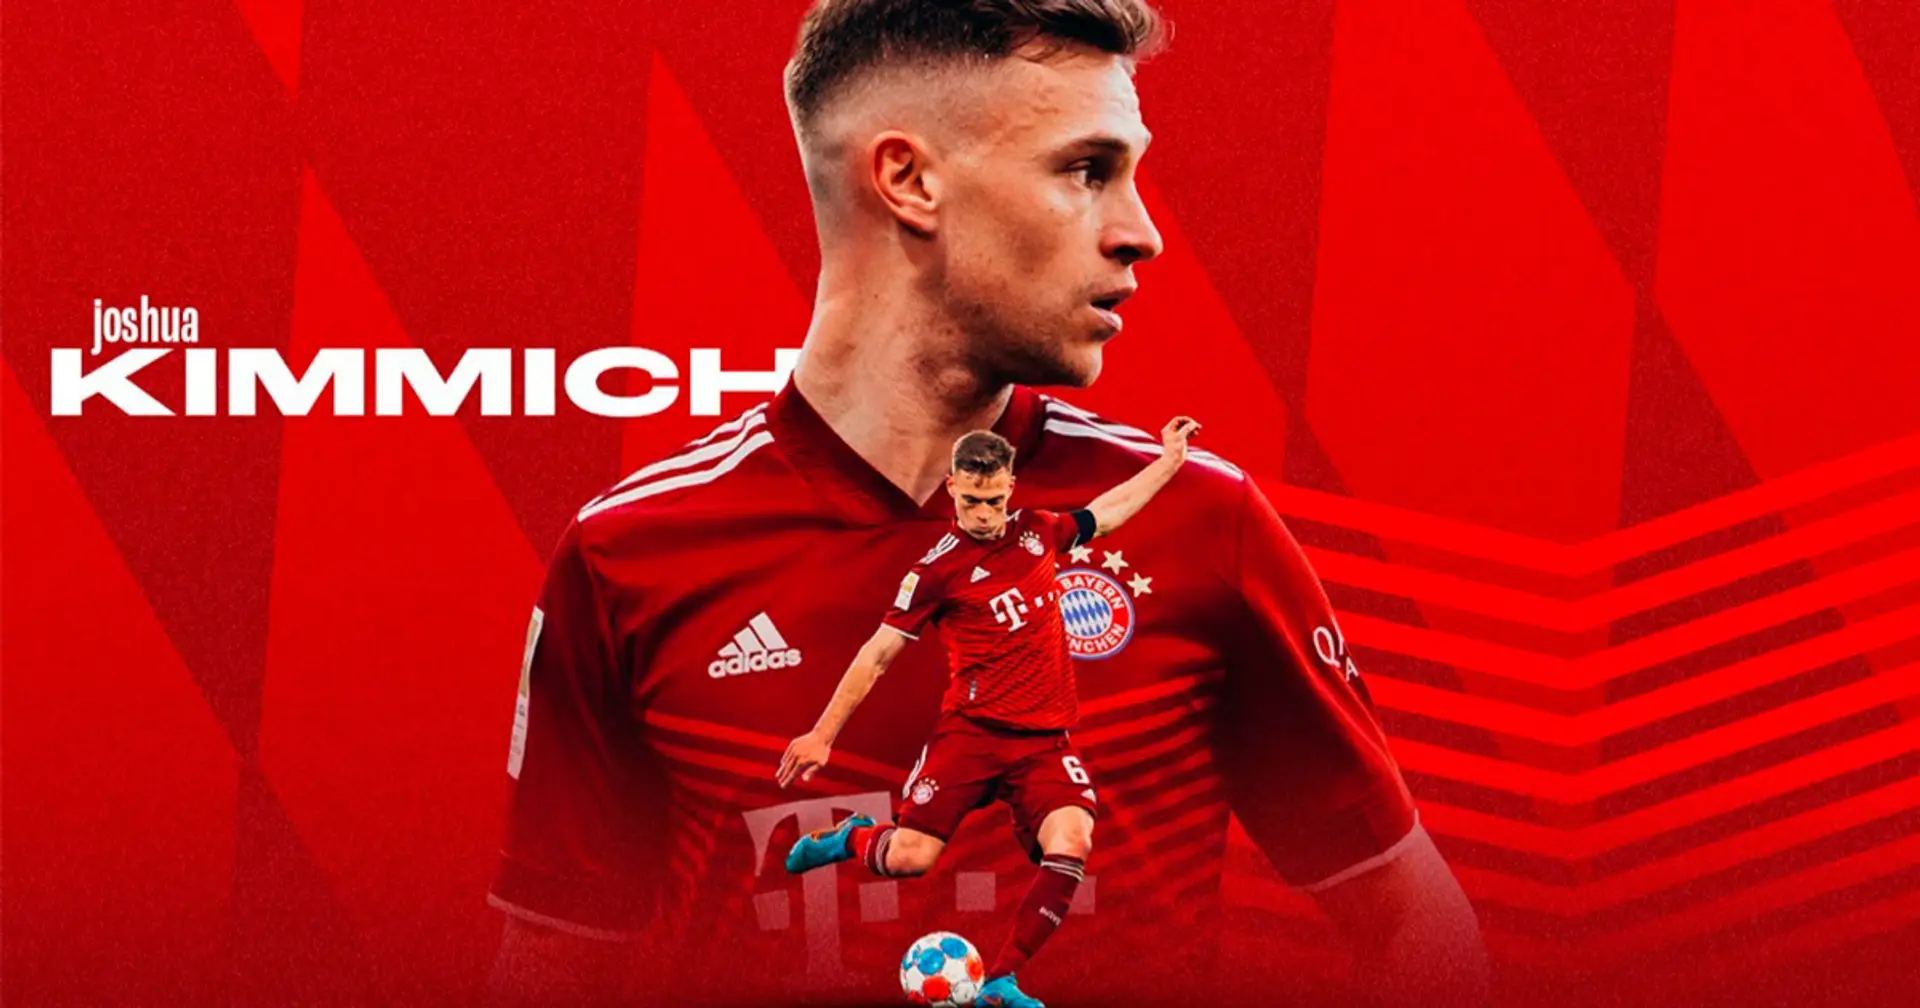 Joshua Kimmich: Die zentrale Figur für den Erfolg des FC Bayern